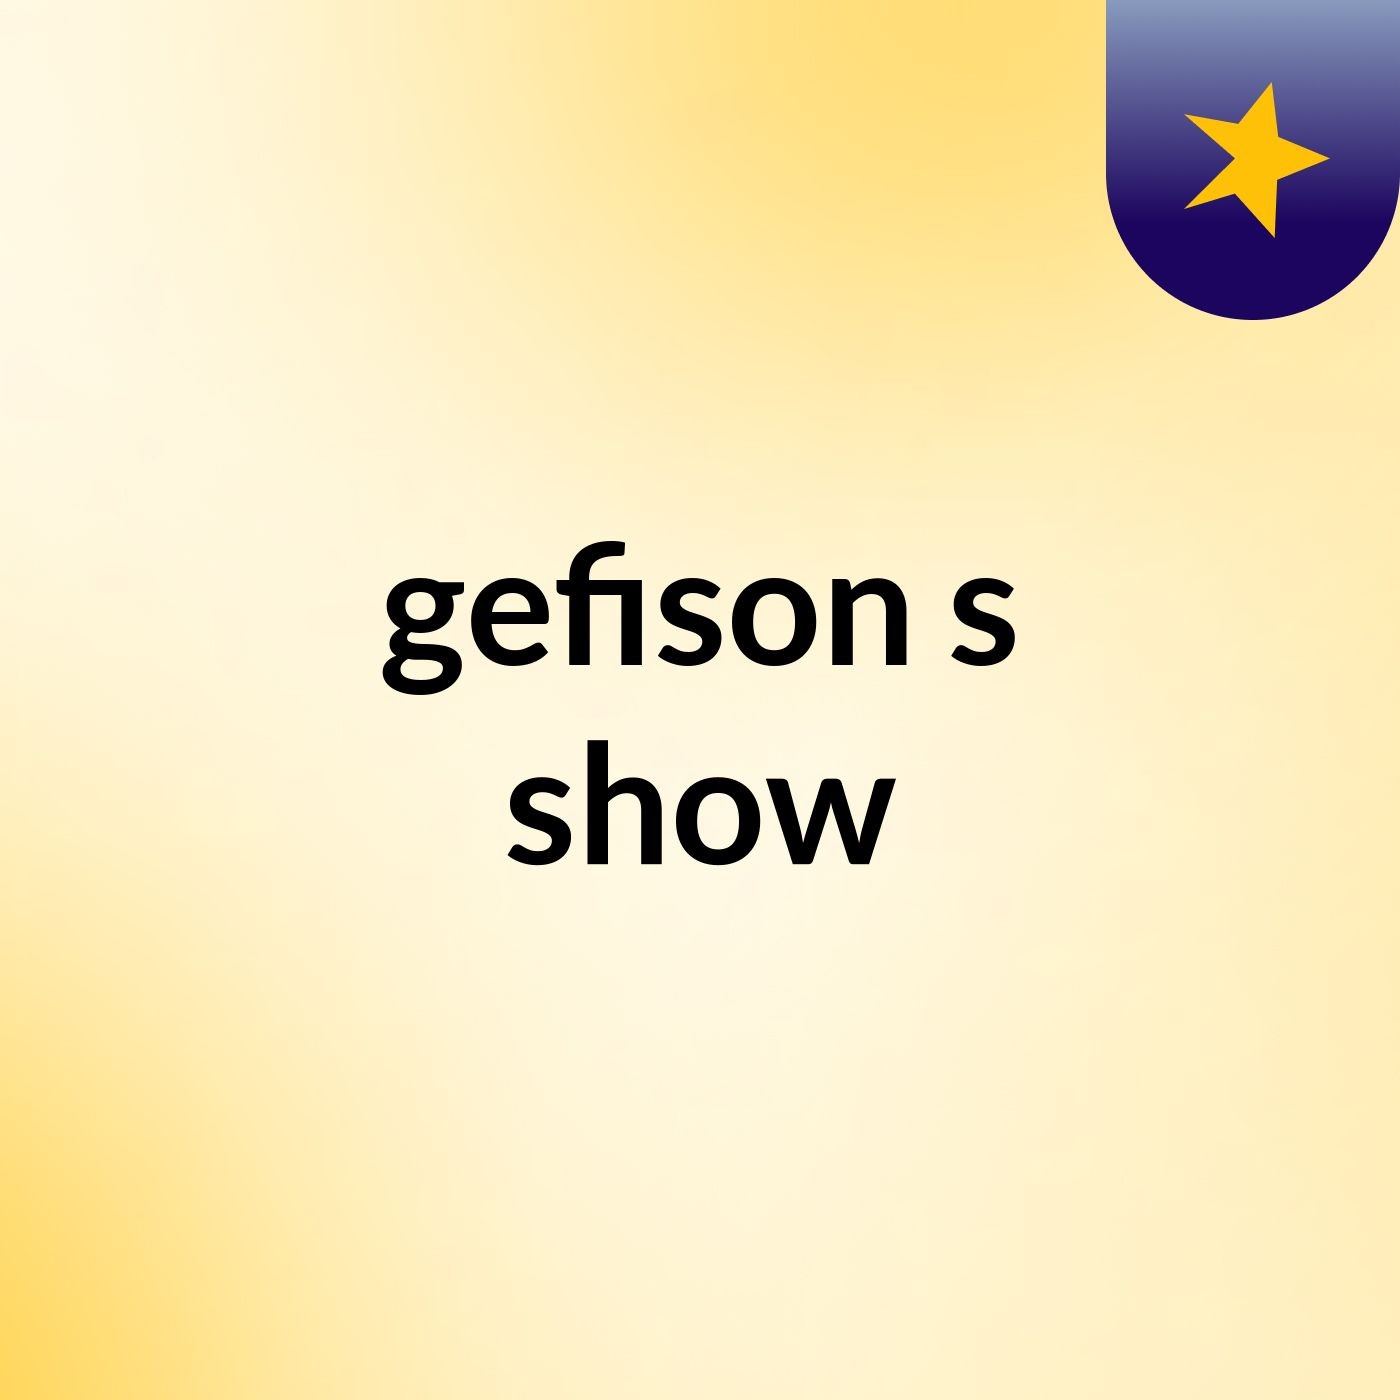 gefison's show